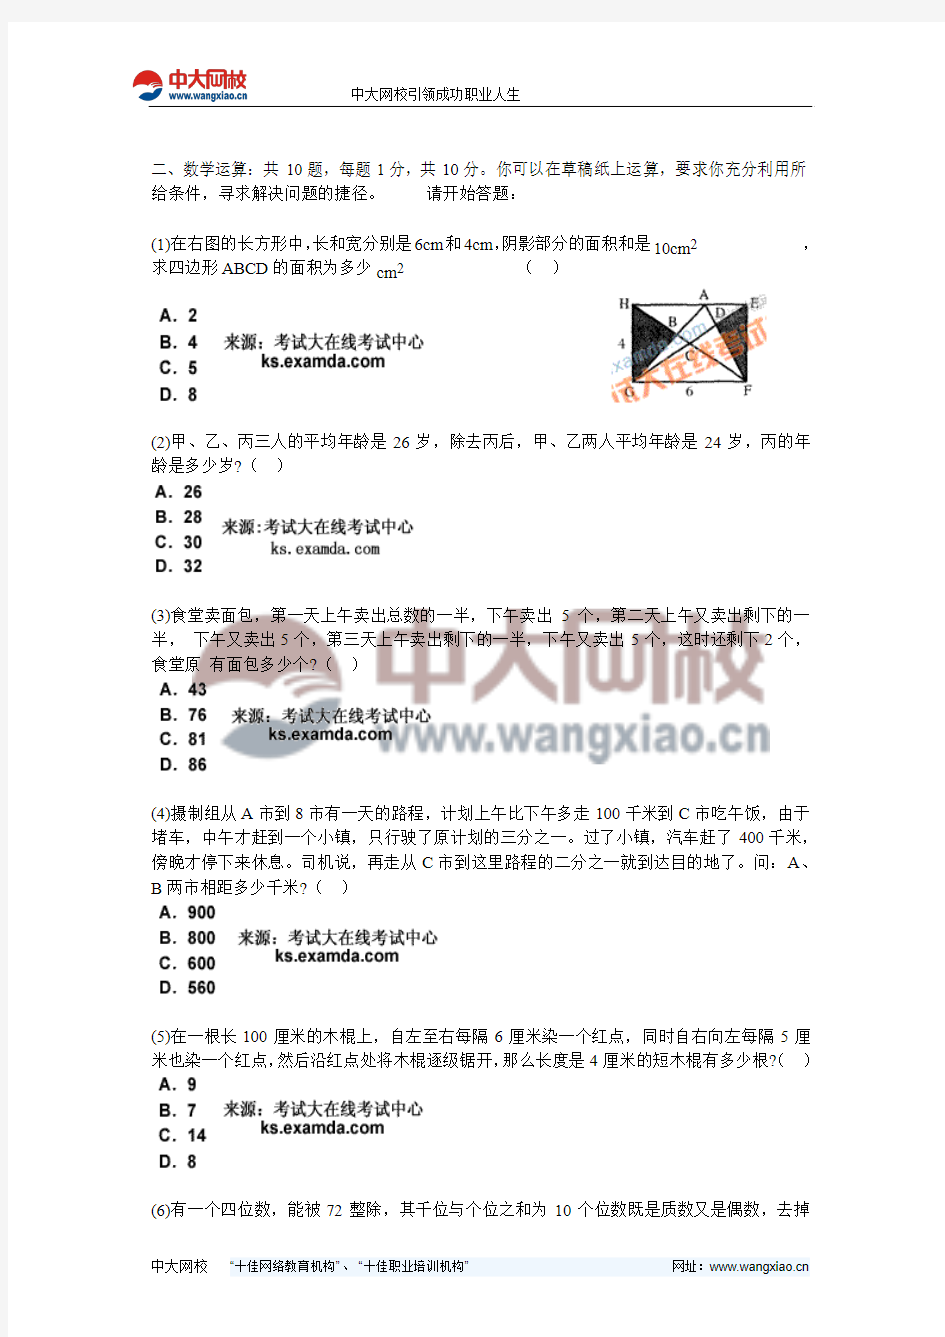 2011年广东省公务员考试《行测》标准预测试卷(1)-中大网校